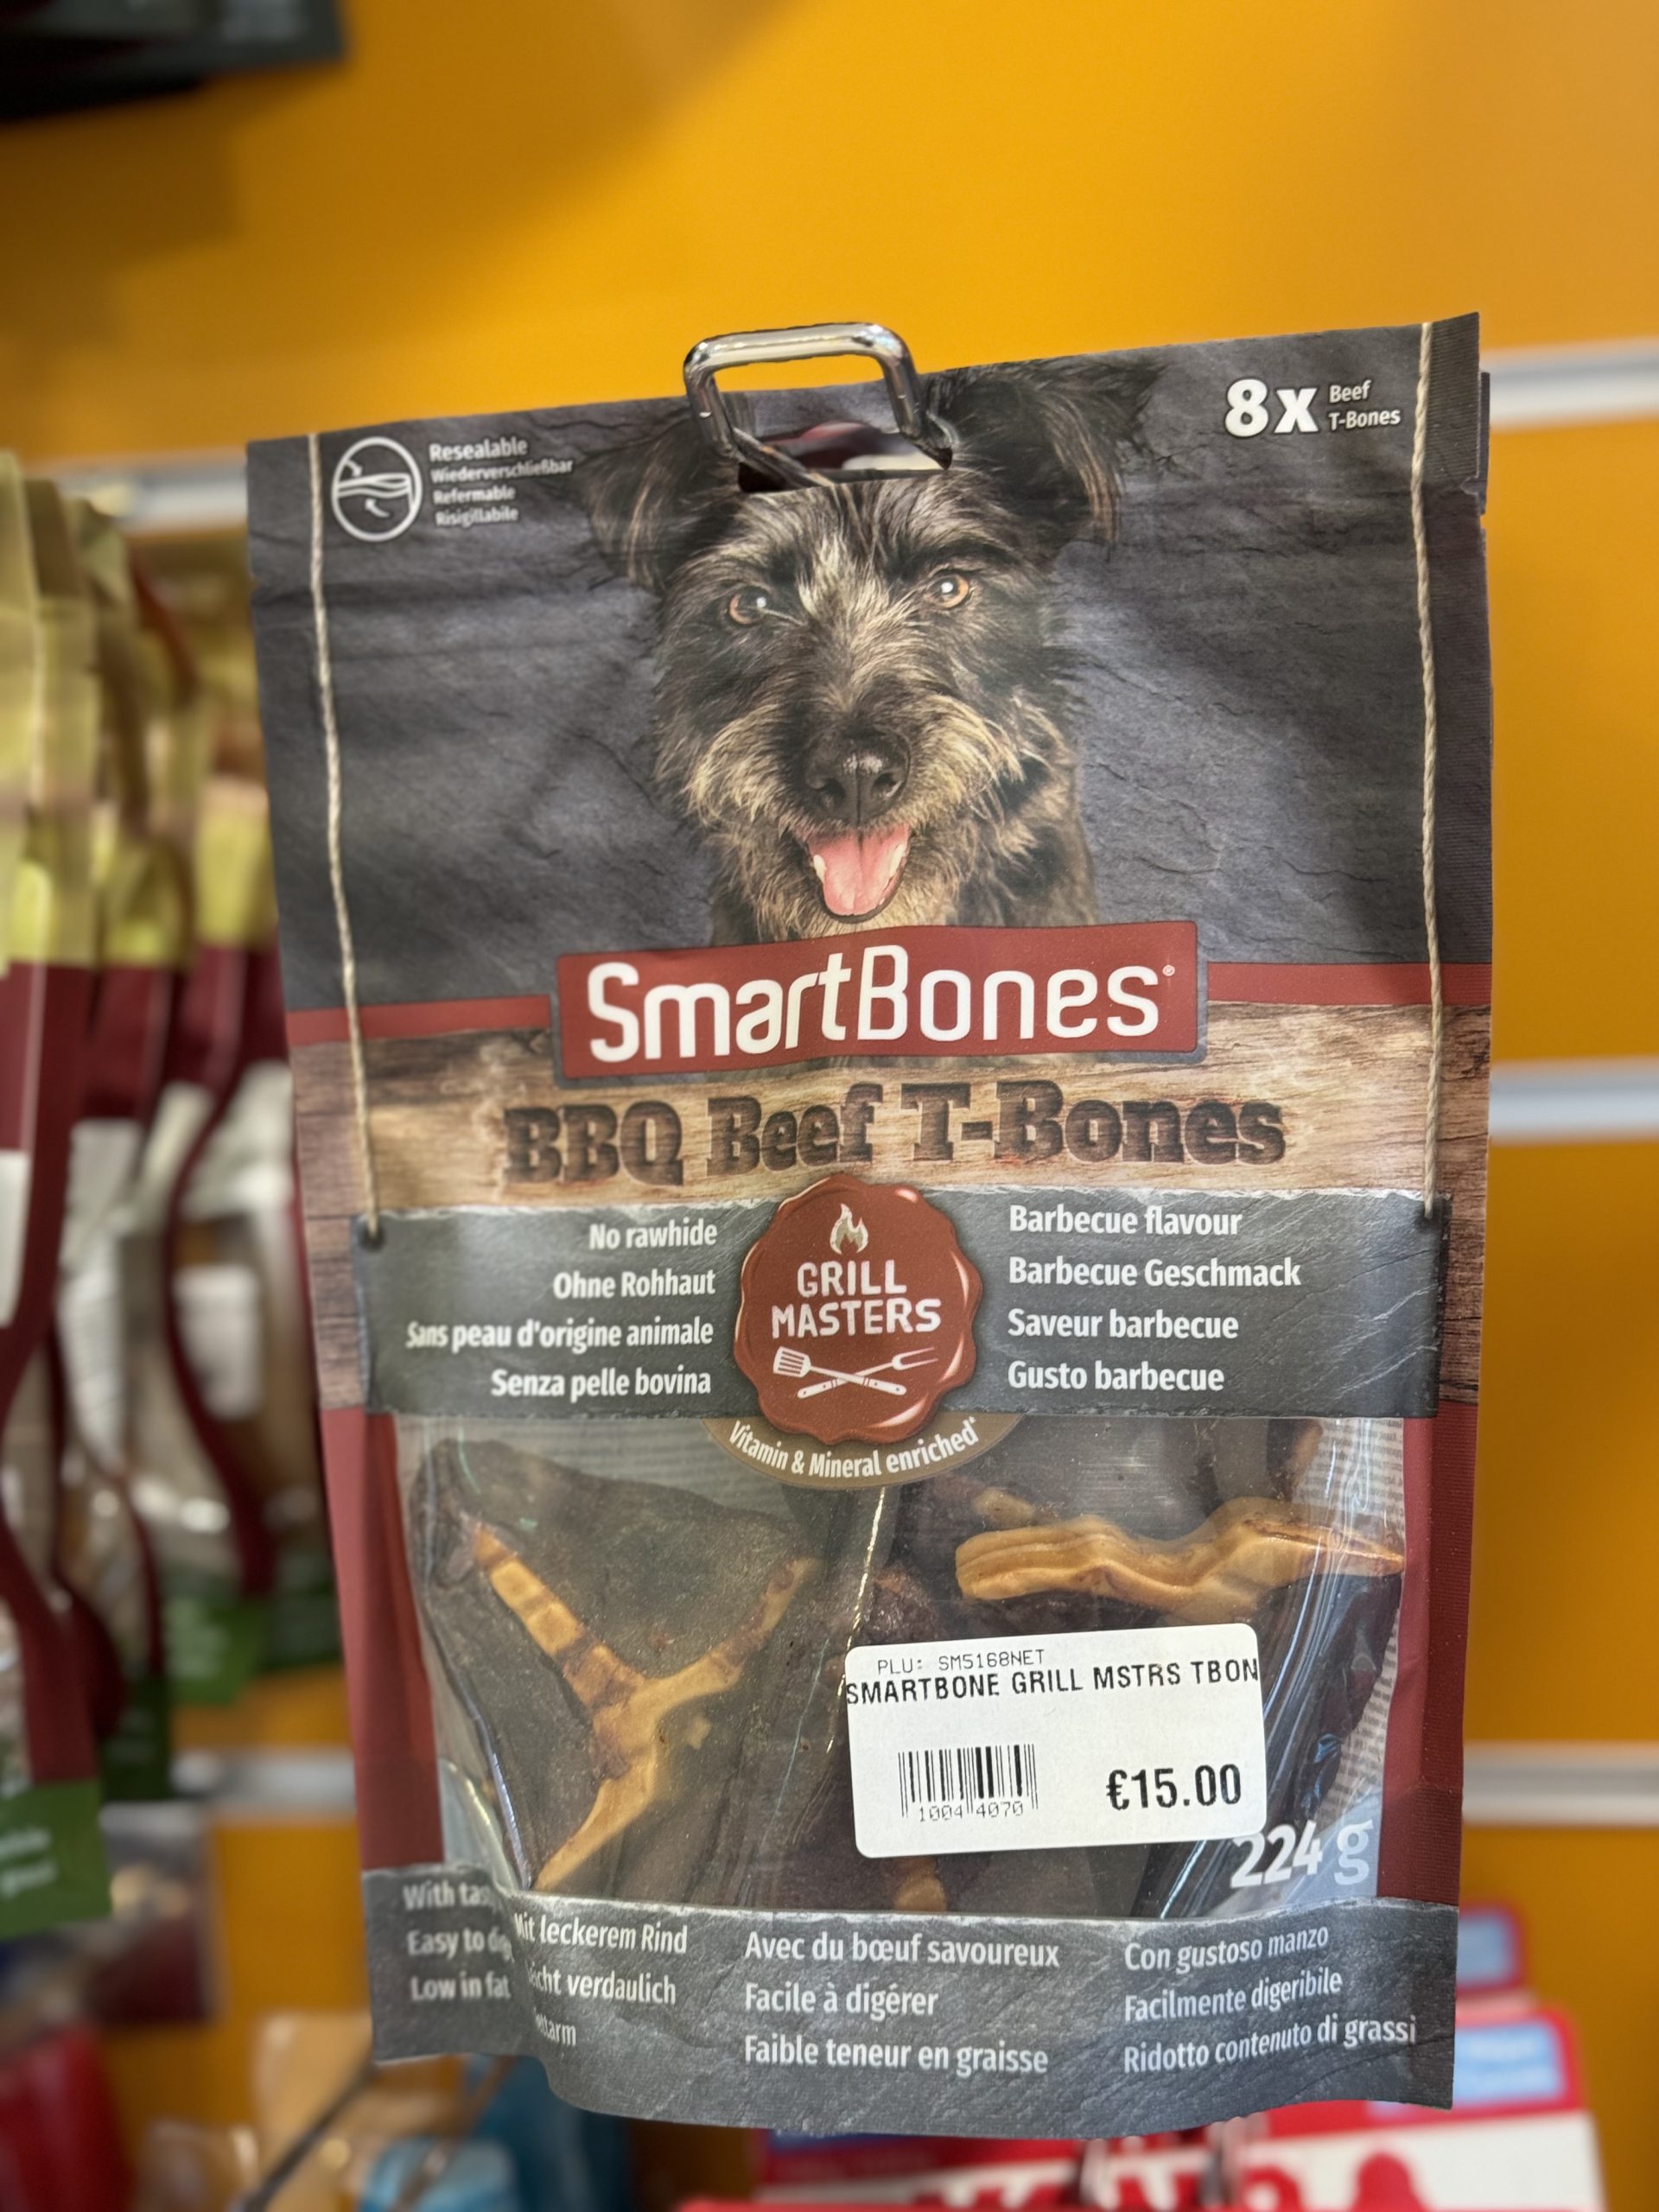 Smartbones BBQ Beef T-Bones